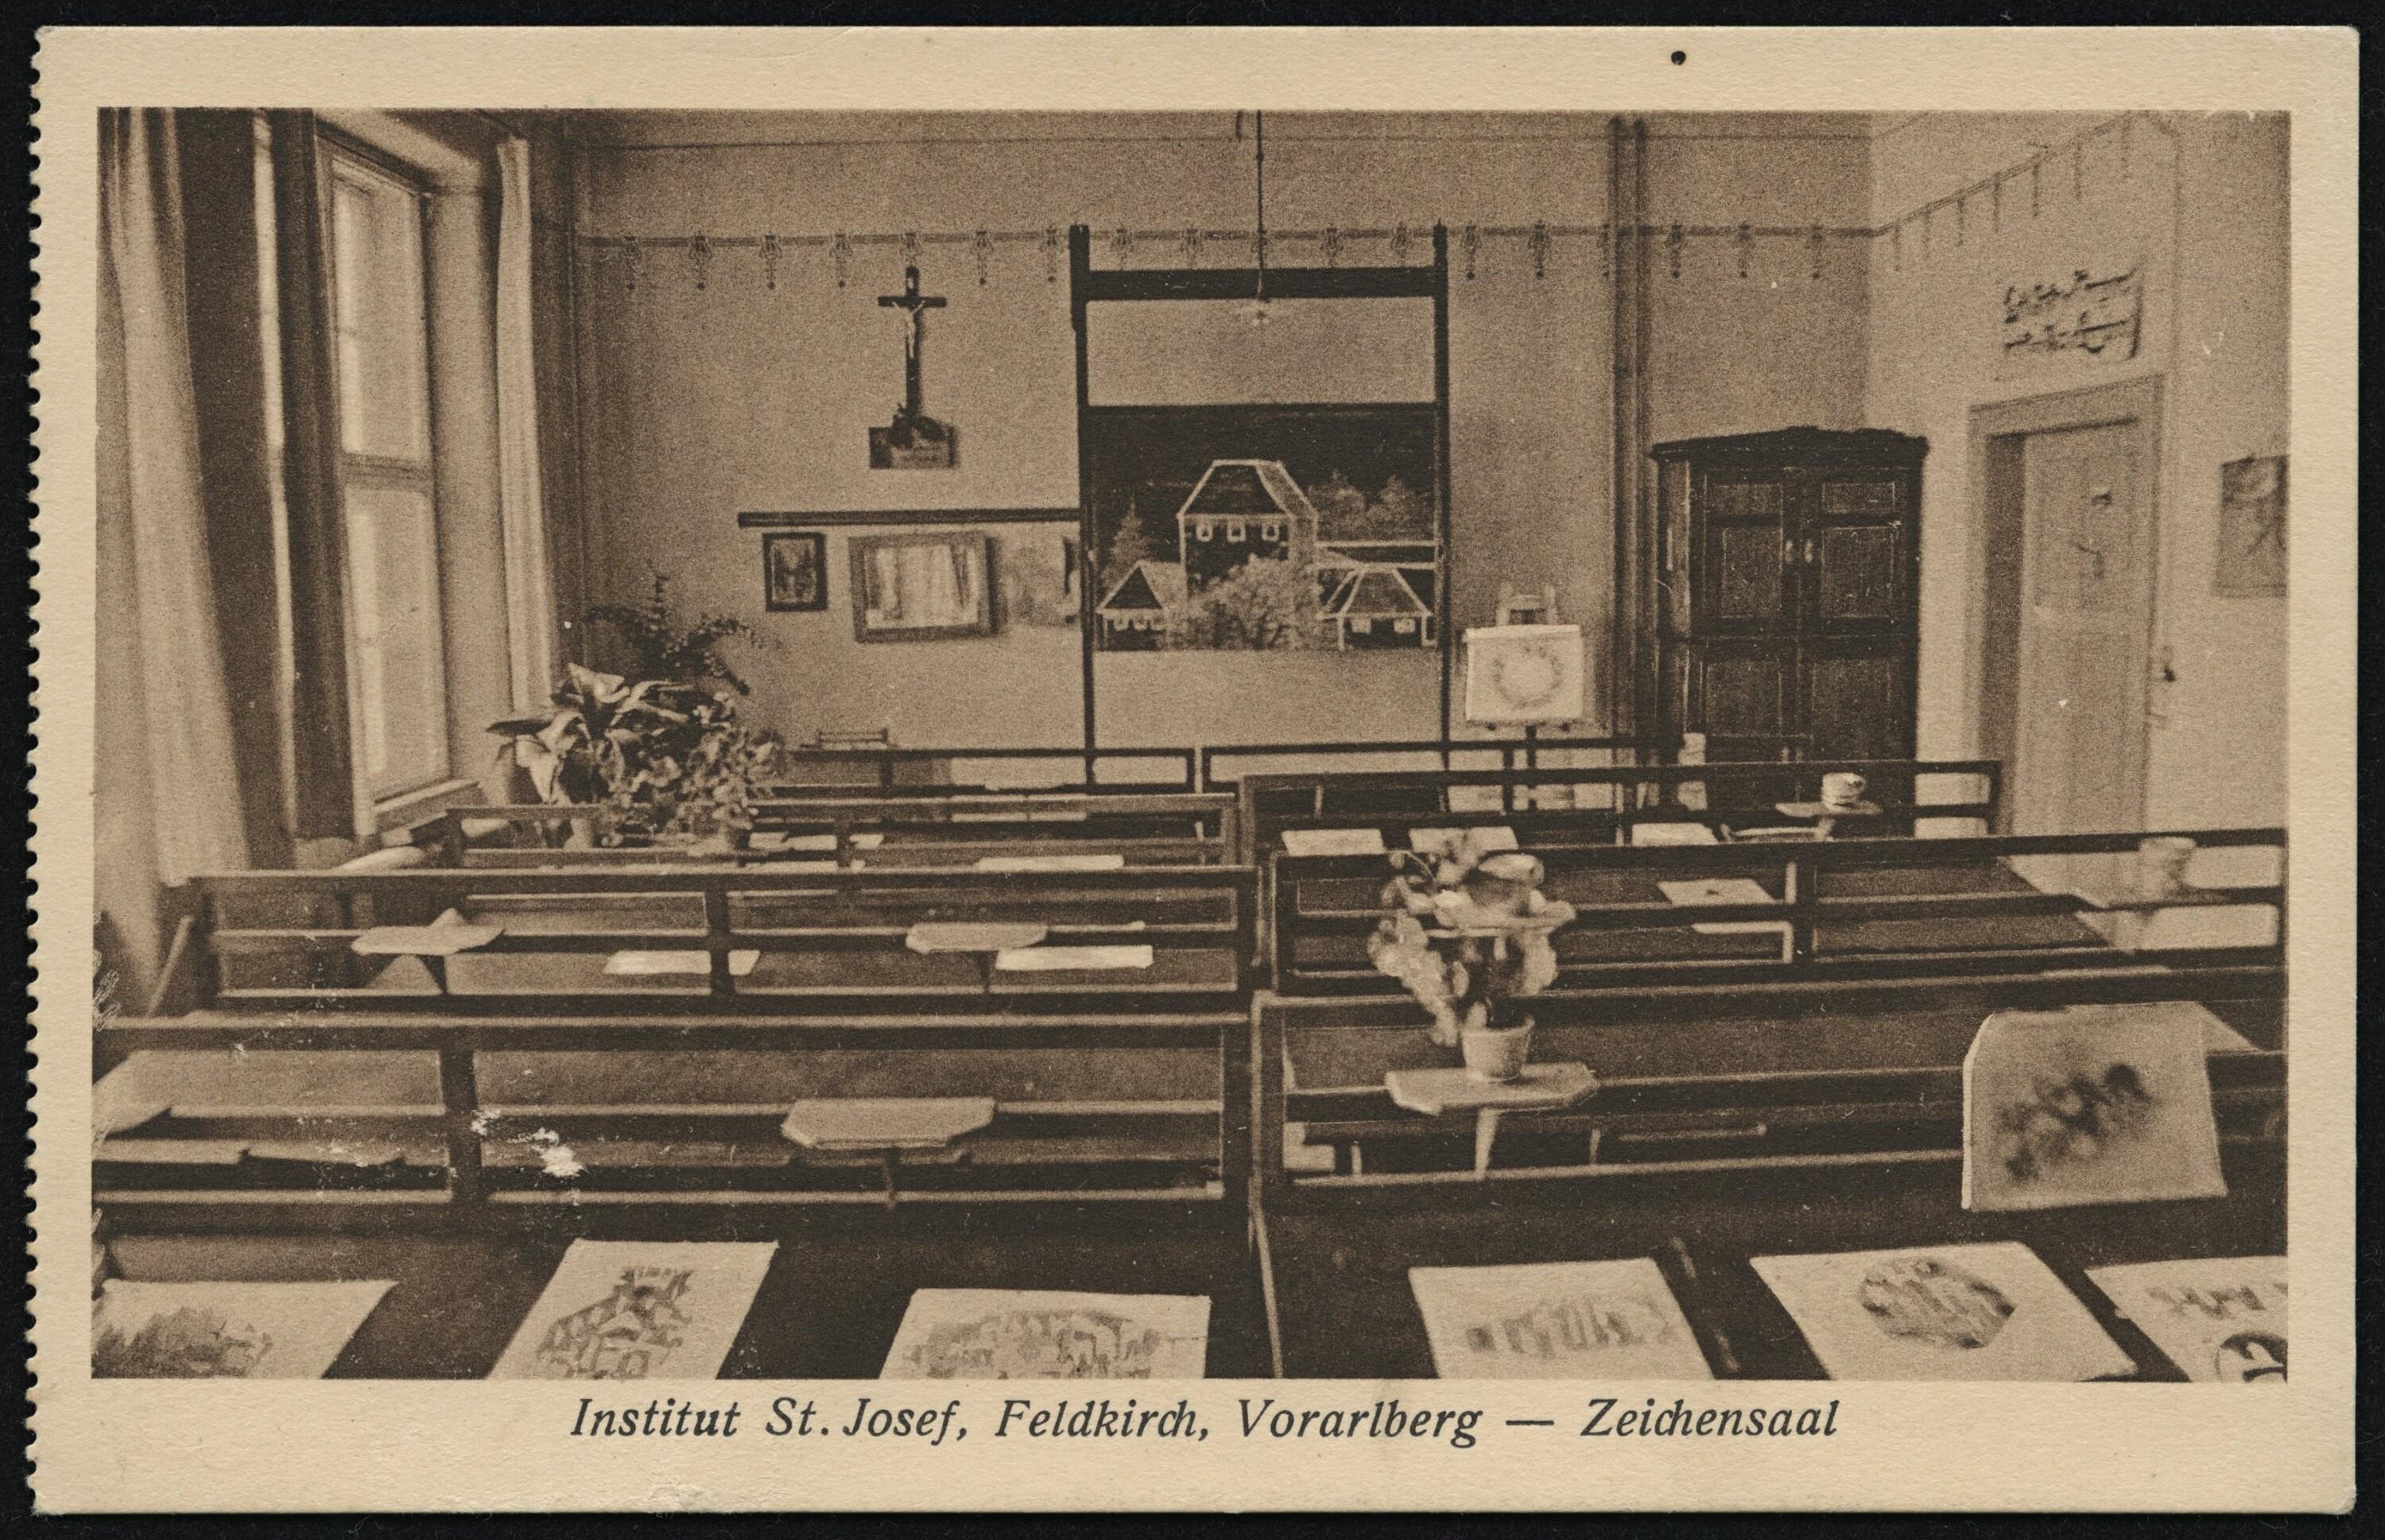 Institut St. Josef, Feldkirch, Vorarlberg - Zeichensaal></div>


    <hr>
    <div class=